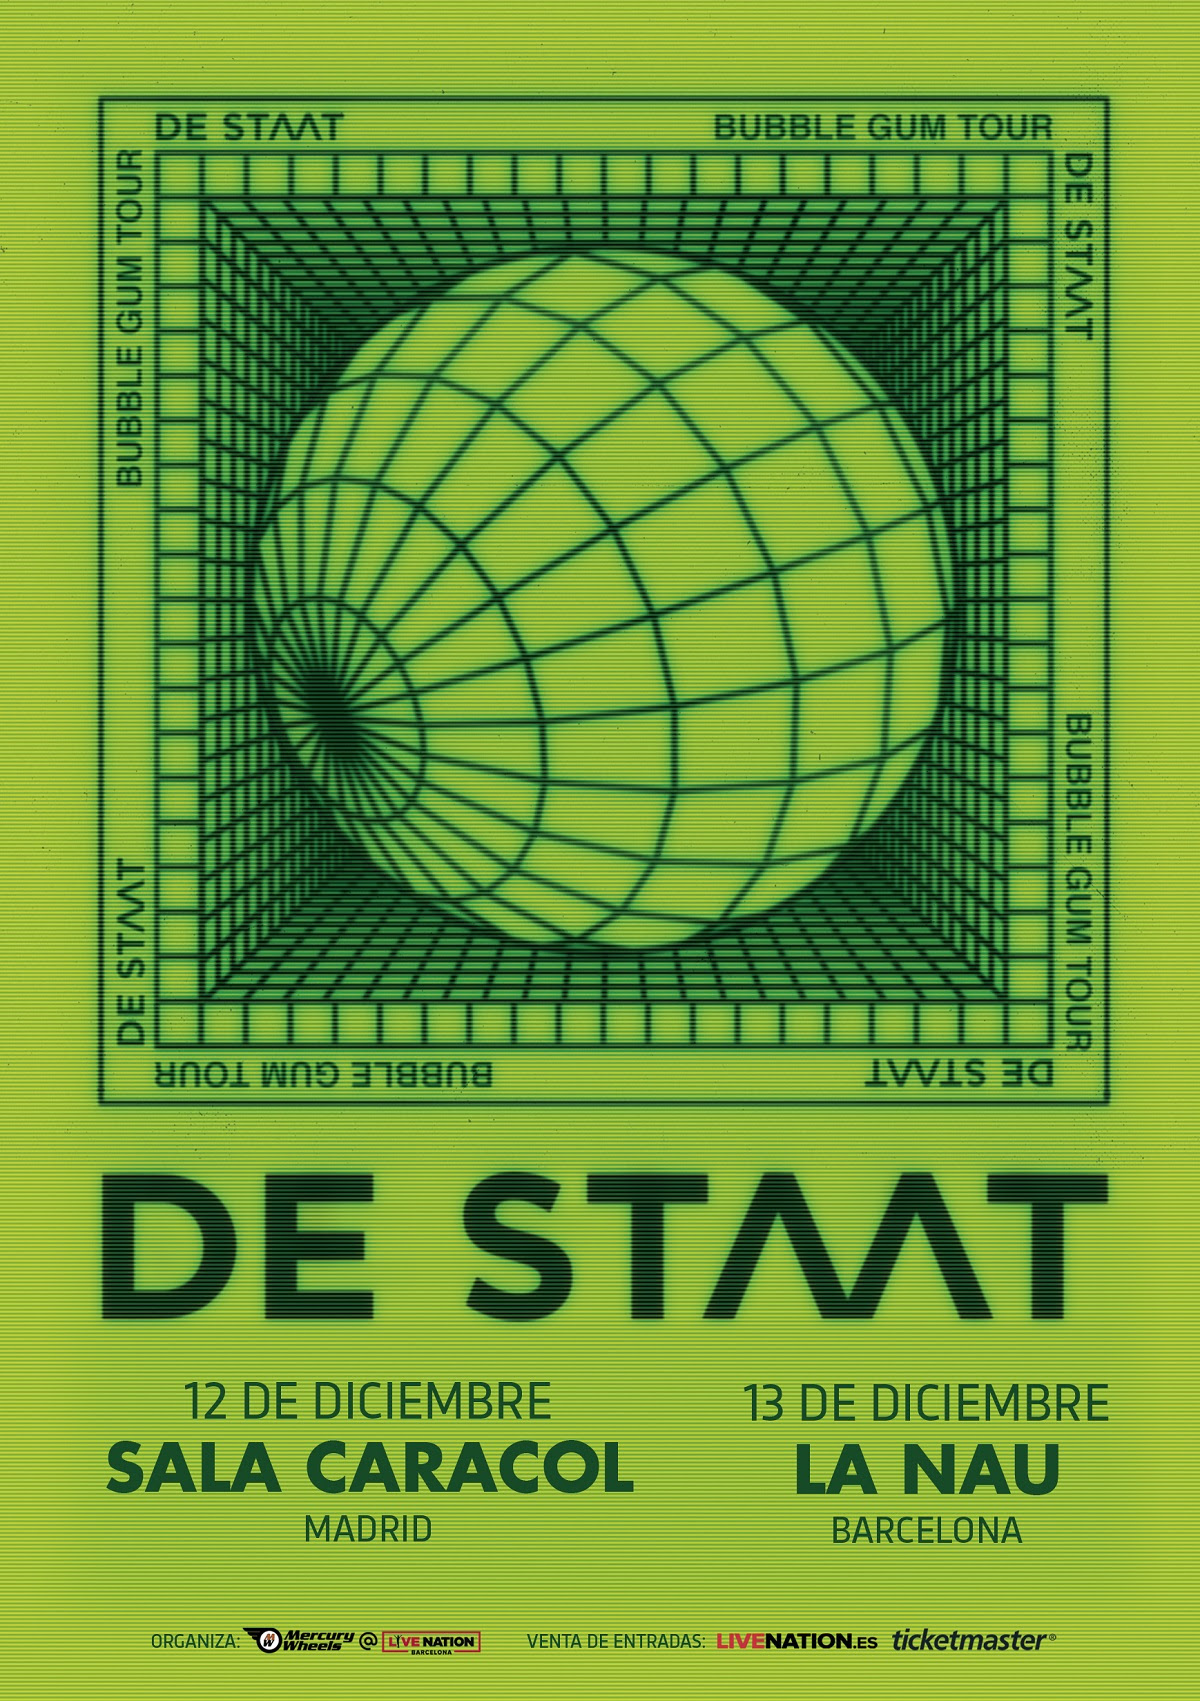 De Staat confirman conciertos en Madrid y Barcelona en diciembre